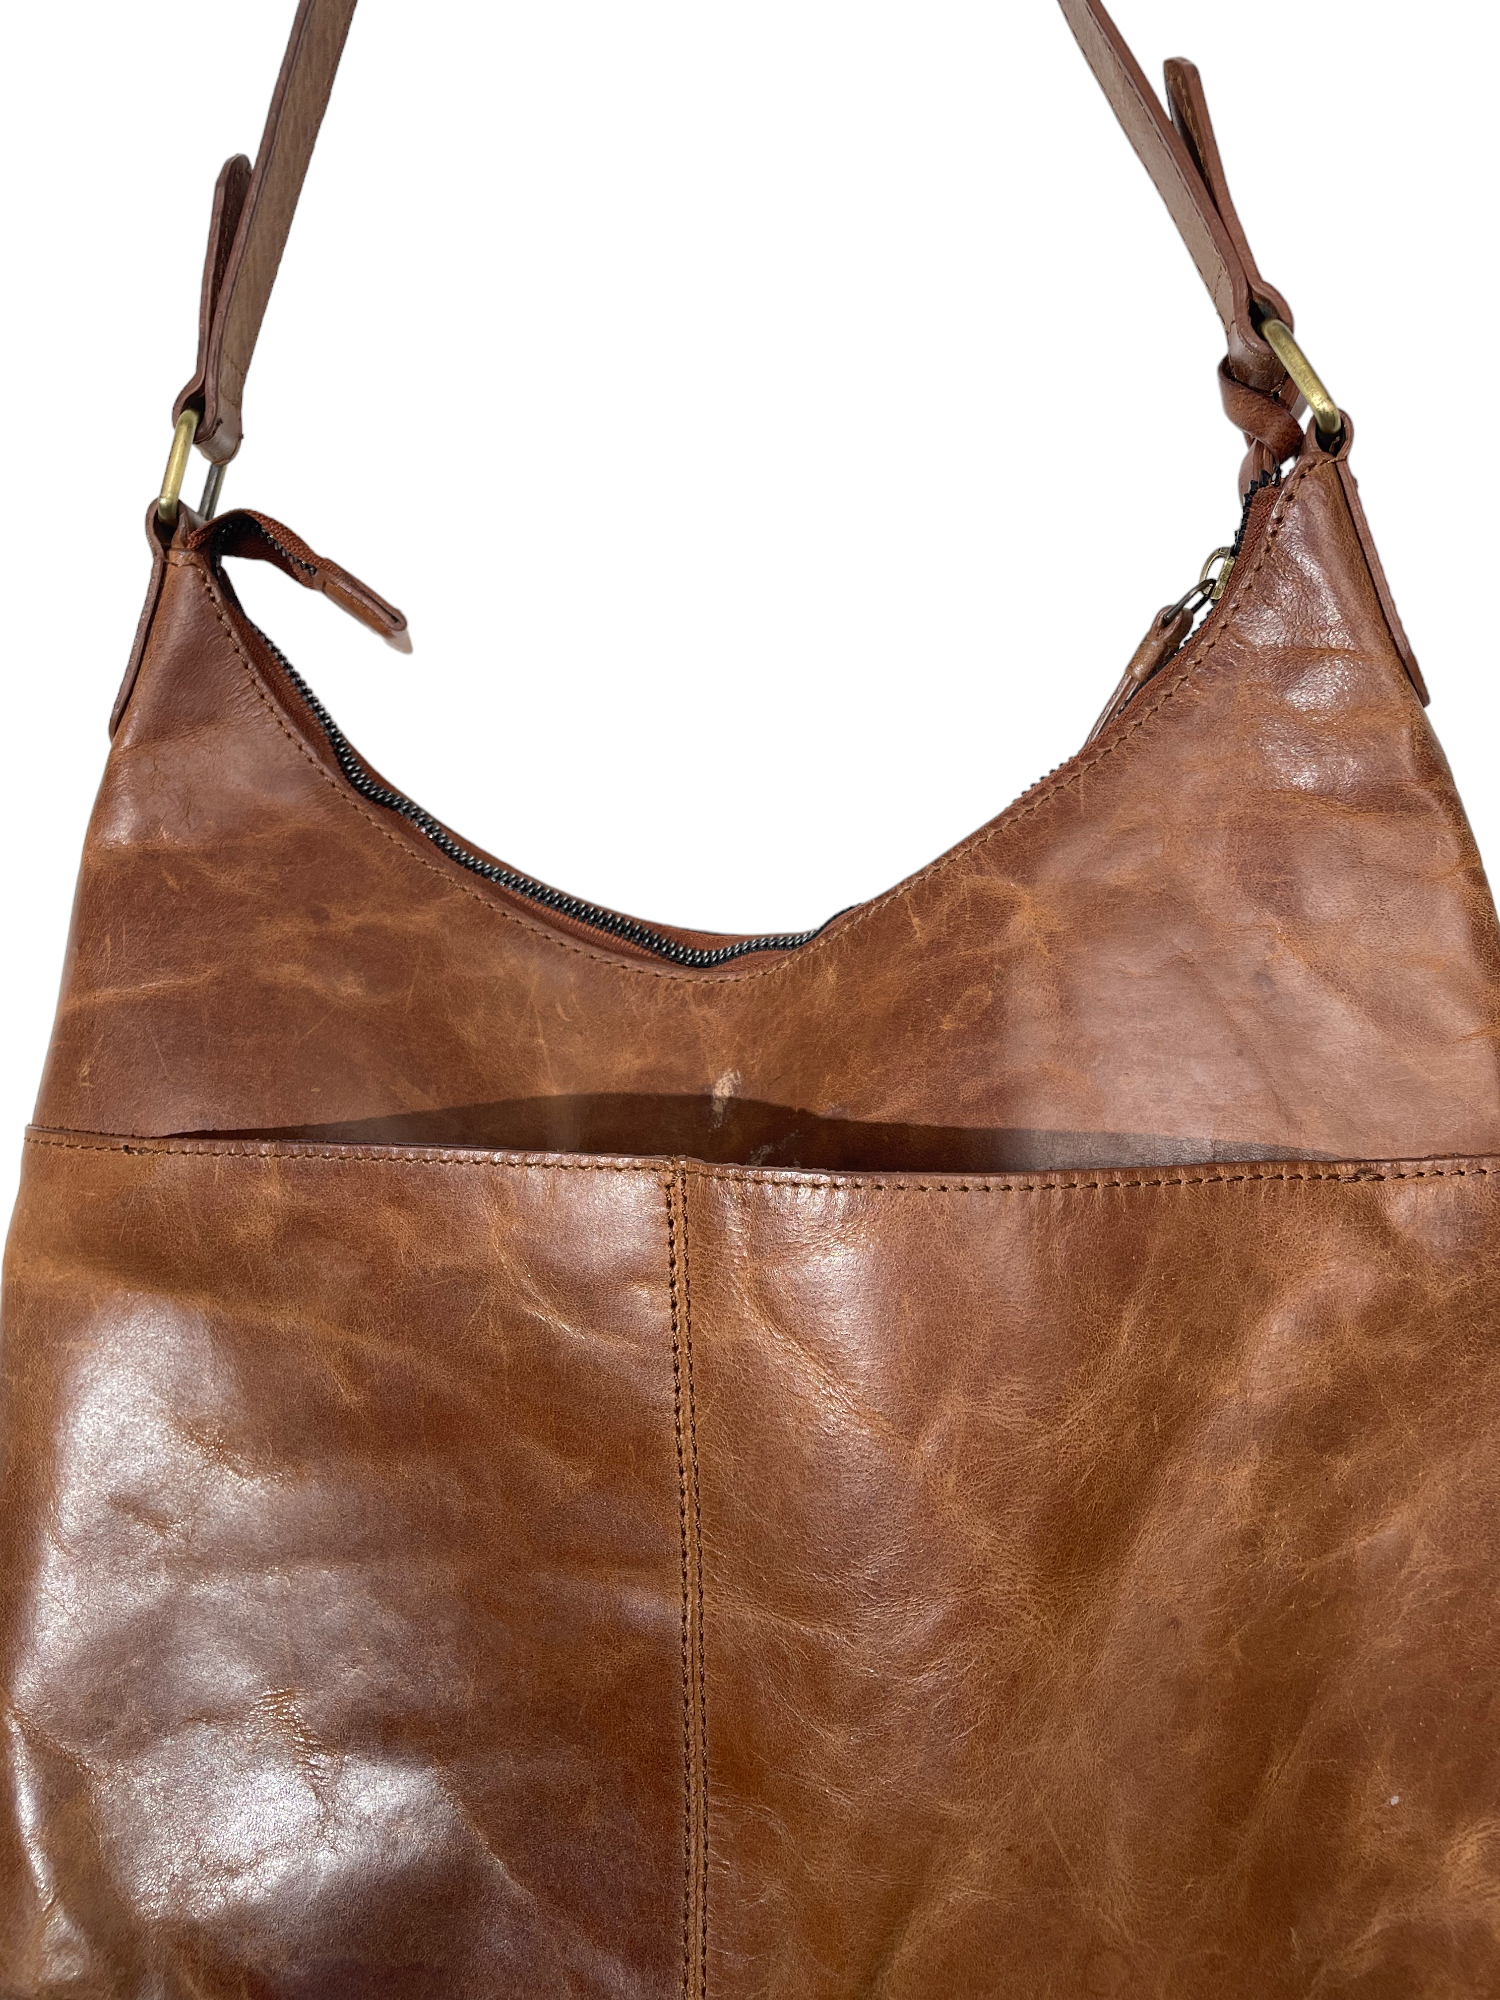 Caramel Brown Leather Shoulder Bag